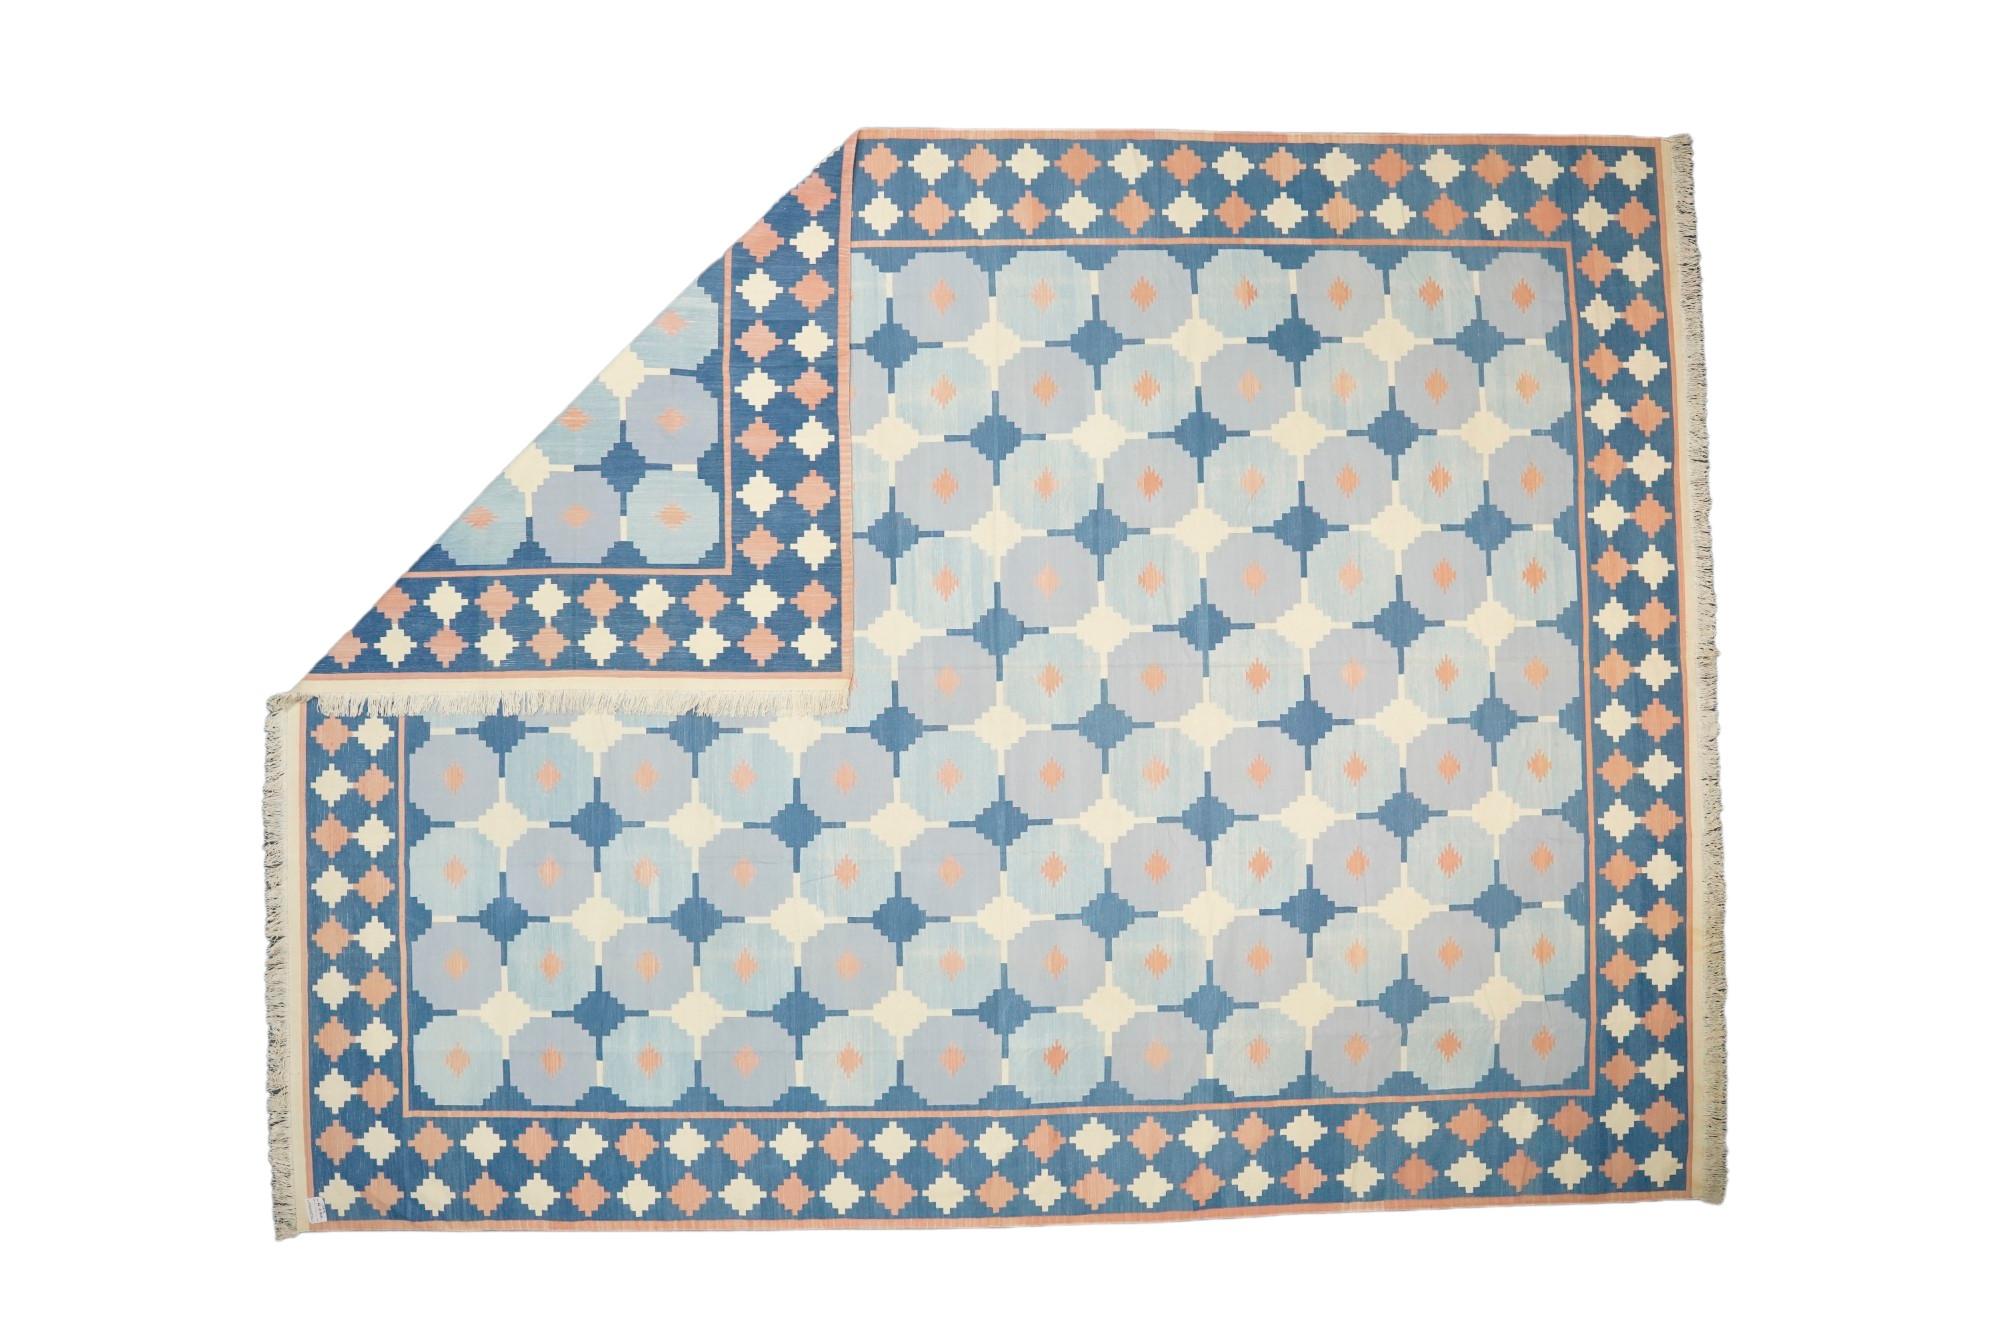 Dieser 12x16 große Teppich ist ein seltener Vintage-Dhurrie-Teppich aus einer aufregenden neuen Kuration aus der Mitte des Jahrhunderts von Rug &New Kilim. Das handgewebte Flachgewebe aus Wolle stammt aus Indien (ca. 1950-1960) und weist blaue und